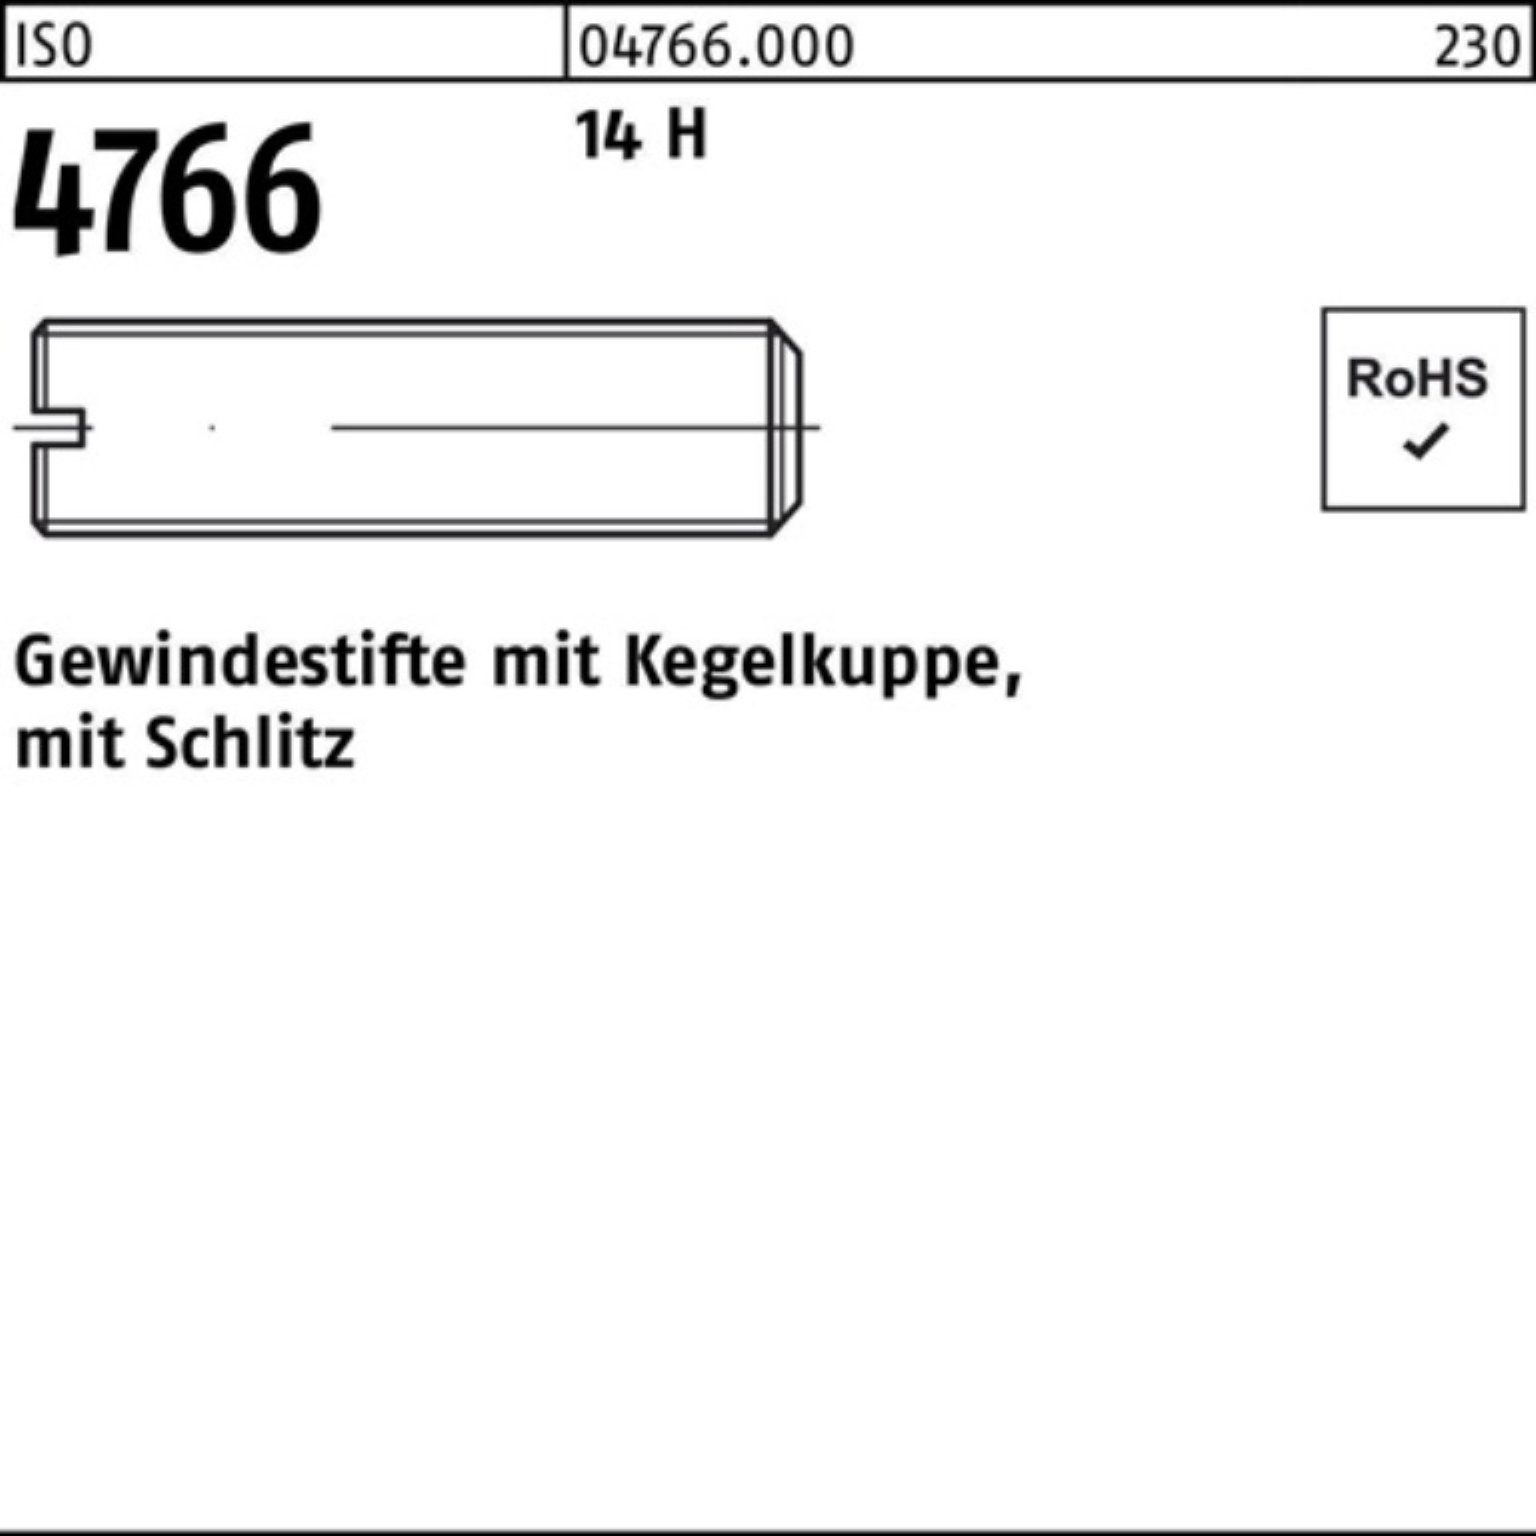 M12x Kegelkuppe/Schlitz Gewindestift Reyher S Pack 4766 H ISO 100 14 100er Gewindebolzen 30